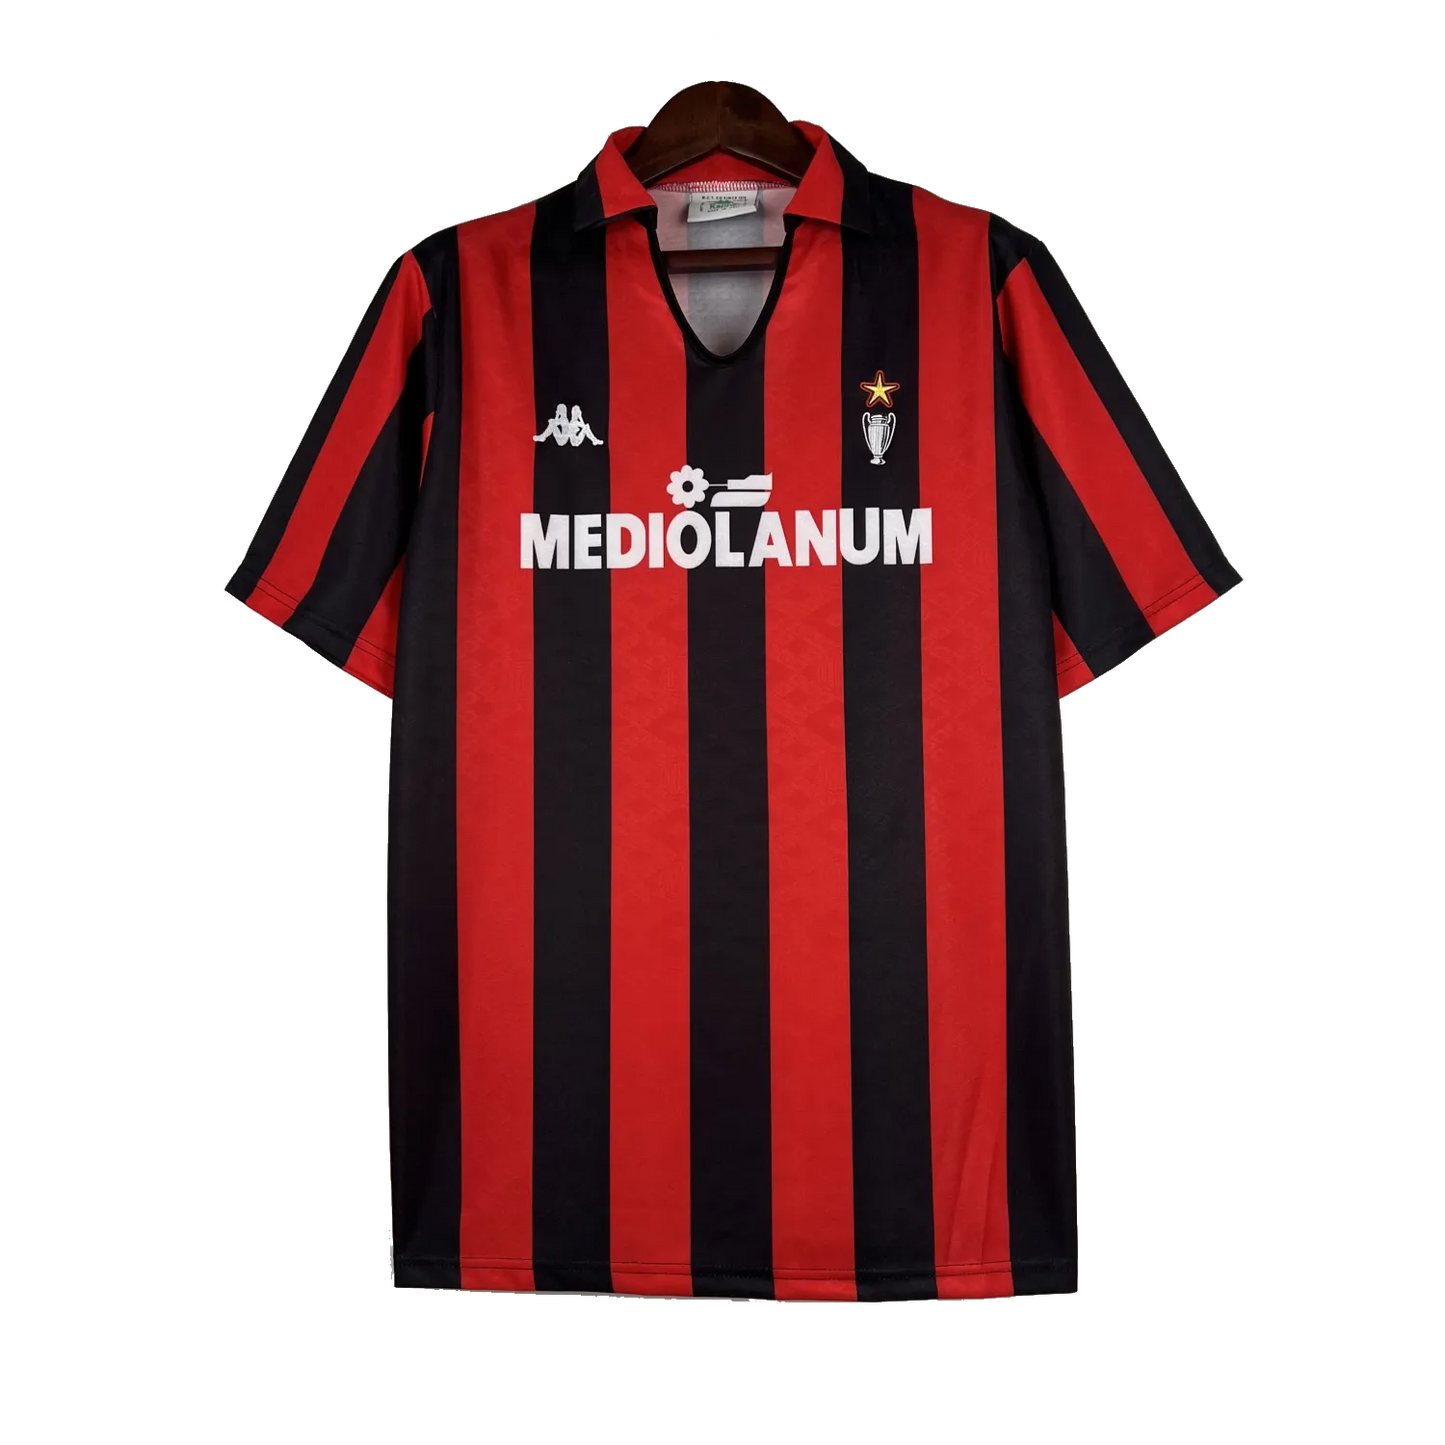 AC Milan Retro Home Jersey 1989/90 Red & Black Men's